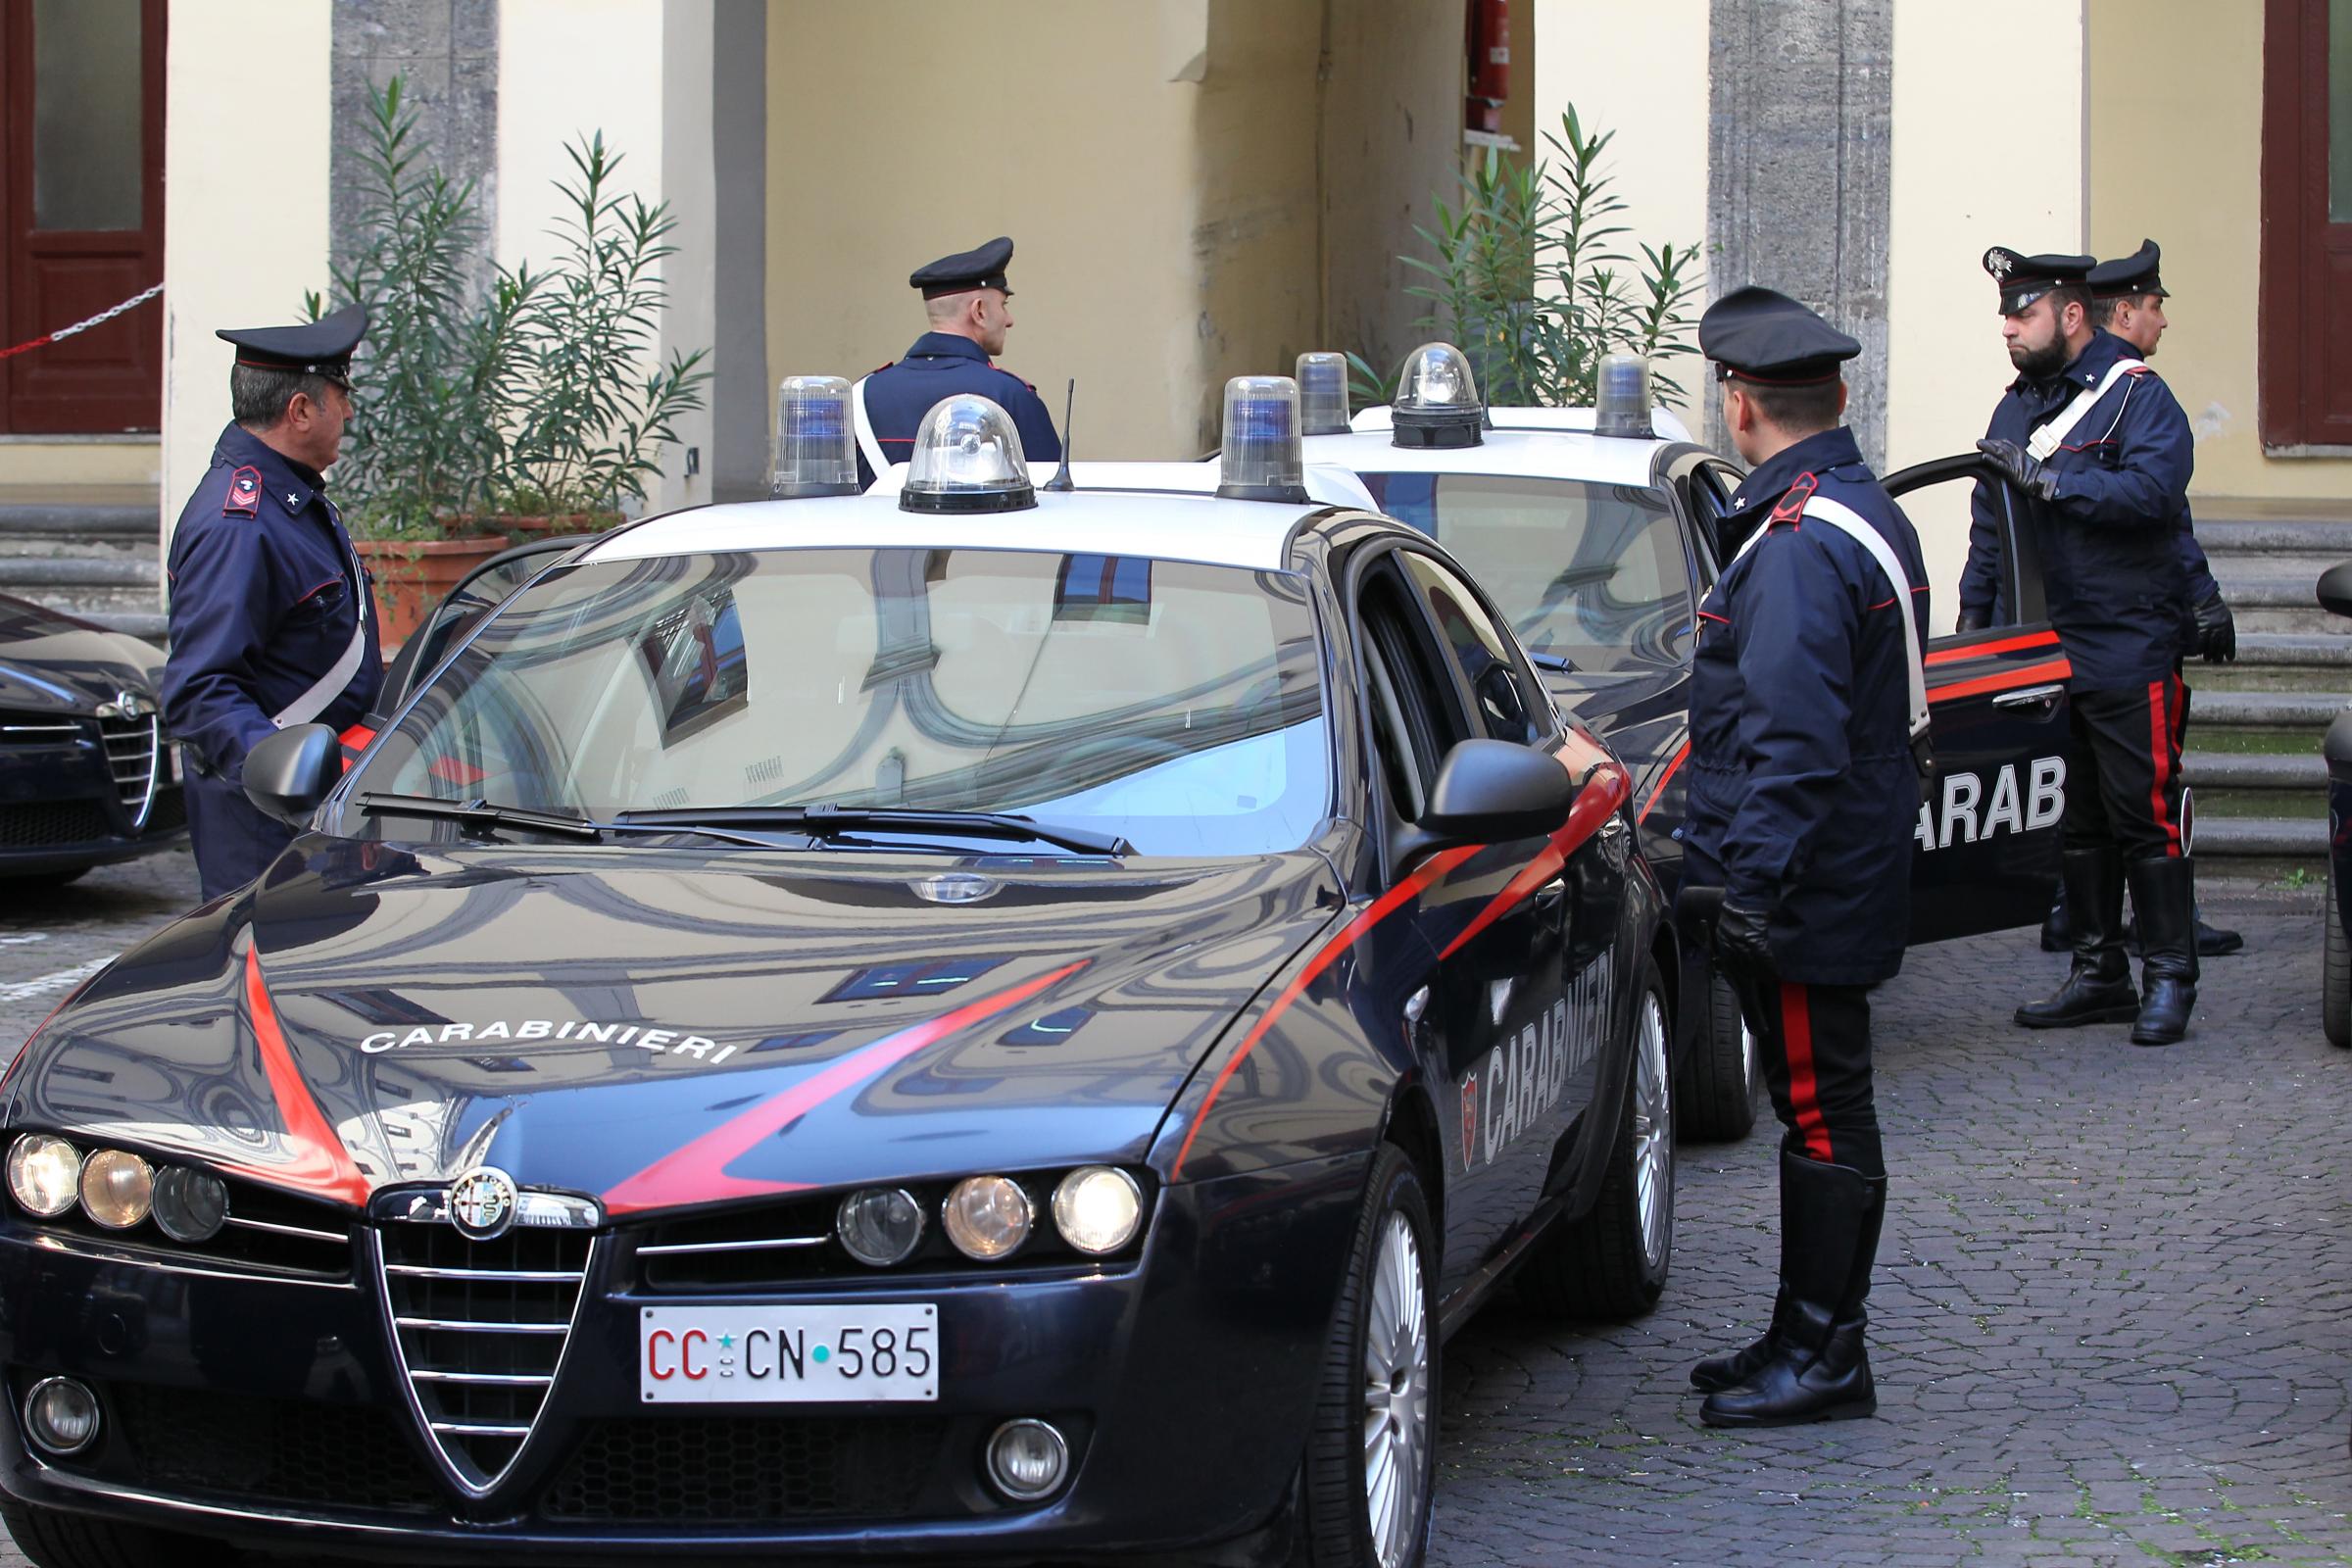 carabinieri-arresti